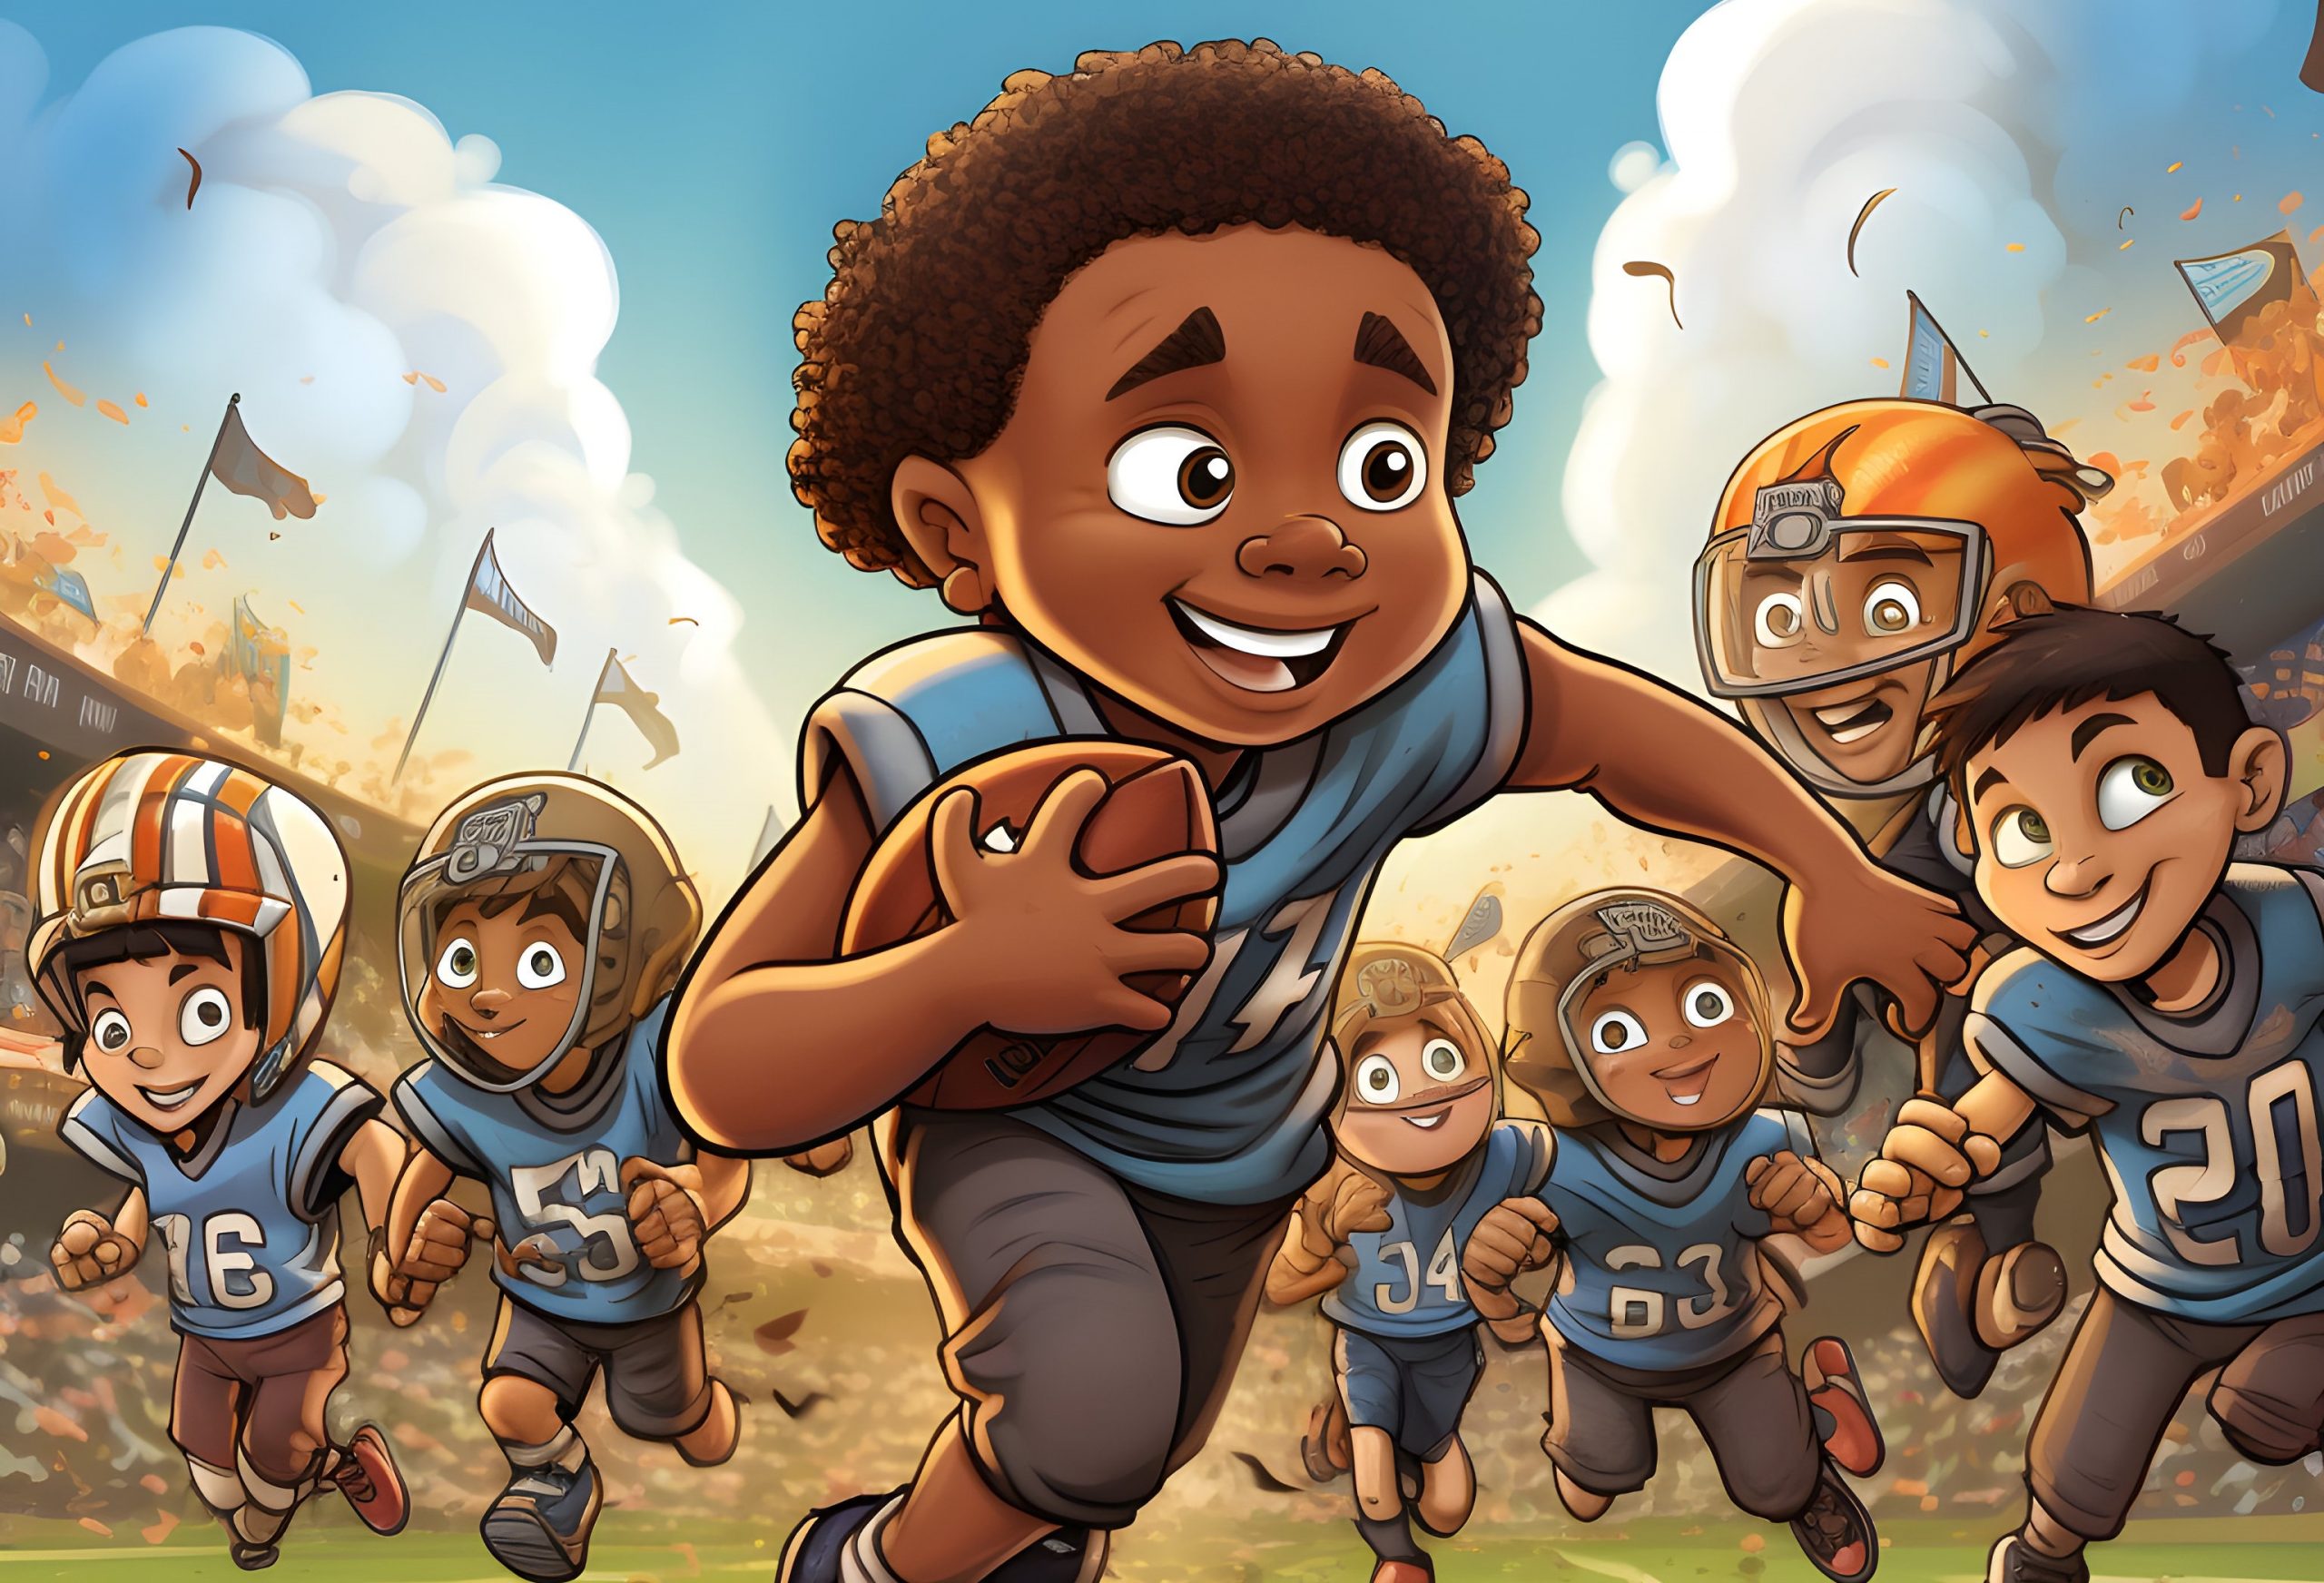 FootballR - NFL - Das ist ein Touchdown - Ein Cartoonbild einer Gruppe von Kindern, die auf einem American-Football-Feld laufen.